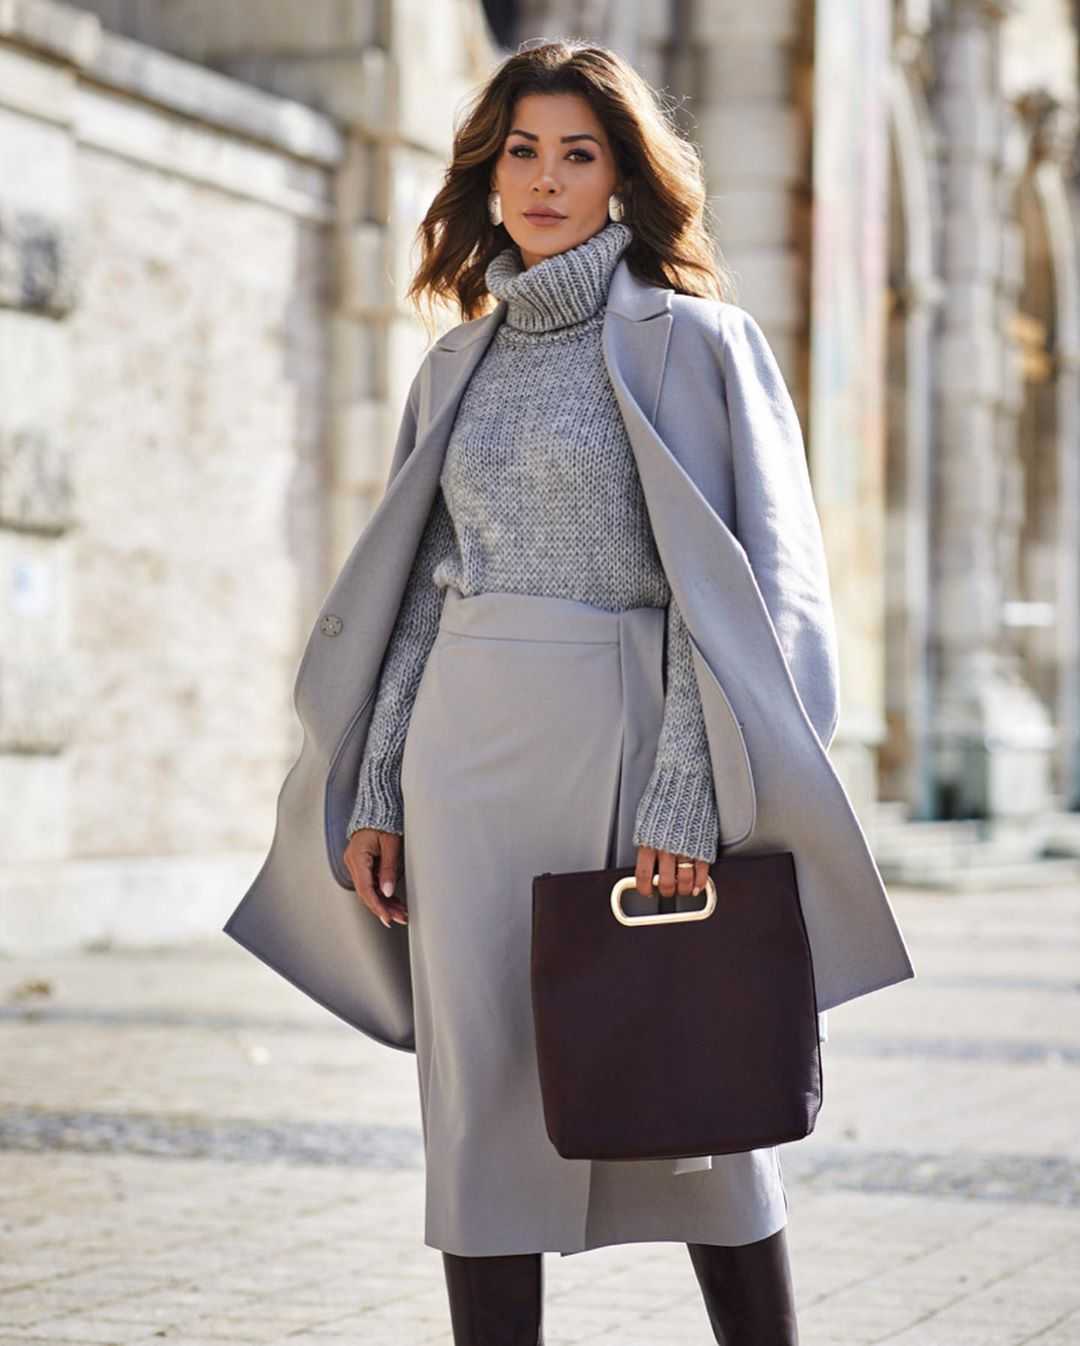 Какие пальто будут в моде весной 2019 года Смотрим обзор последних модных тенденций и новинок Выбираем модное женское пальто на весну 2019 актуальной модели